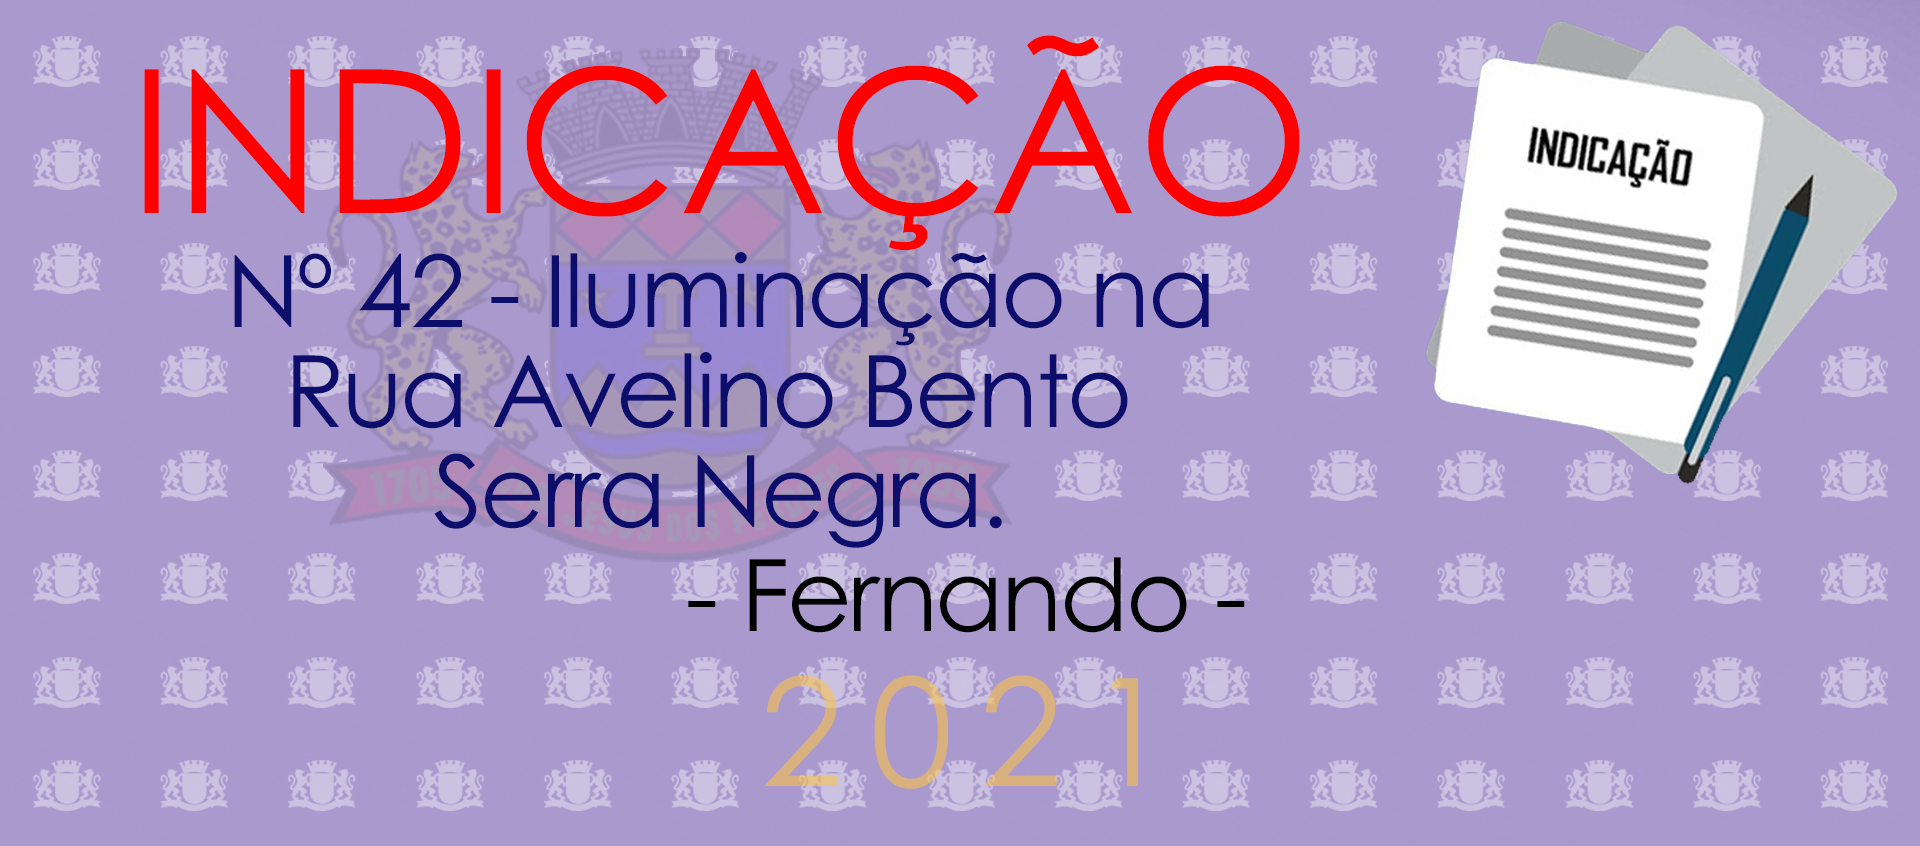 Indicação 42-2021 - Iluminação na Rua Avelino Bento - Fernando